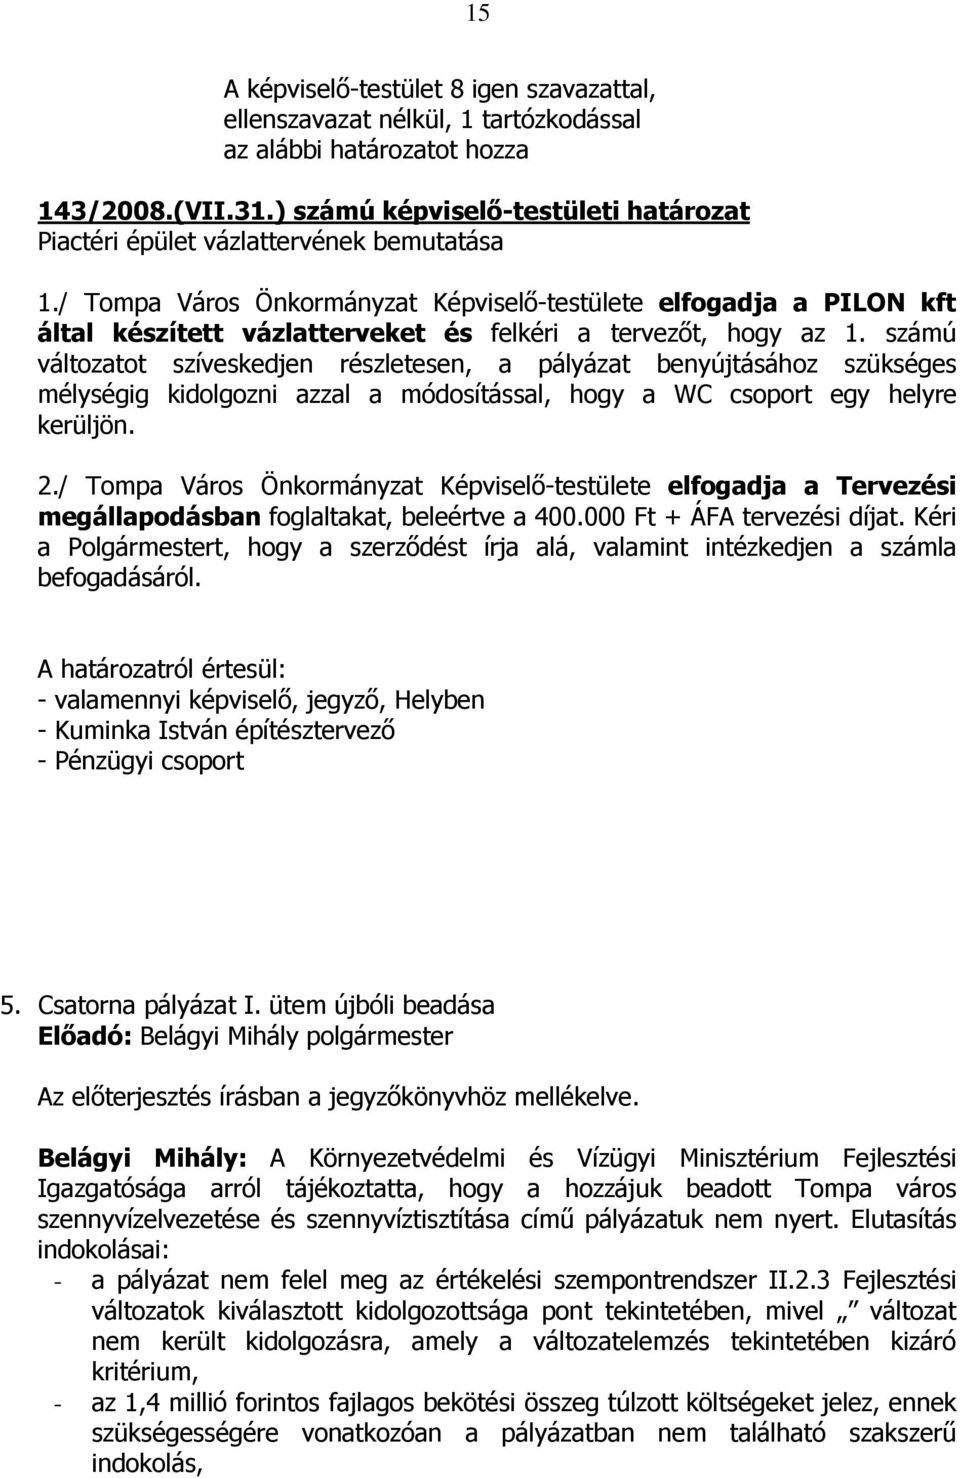 / Tompa Város Önkormányzat Képviselı-testülete elfogadja a PILON kft által készített vázlatterveket és felkéri a tervezıt, hogy az 1.